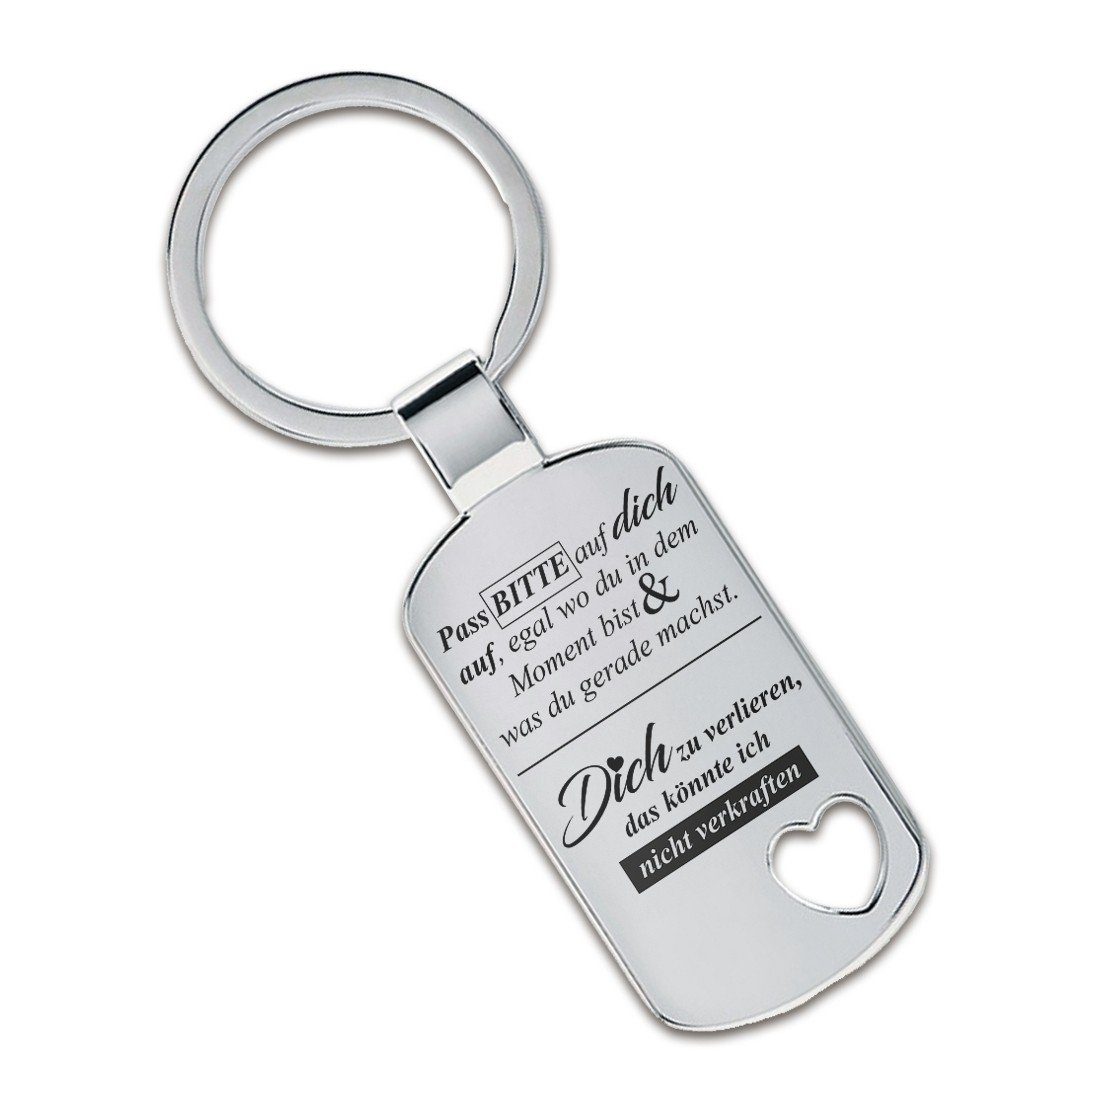 Lieblingsmensch Schlüsselanhänger Pass BITTE auf dich auf ...- ein tolles Geschenk &Glücksbringer (Schlüsselanhänger mit Gravur, inklusive Schlüsselring), Robuste und filigrane Lasergravur